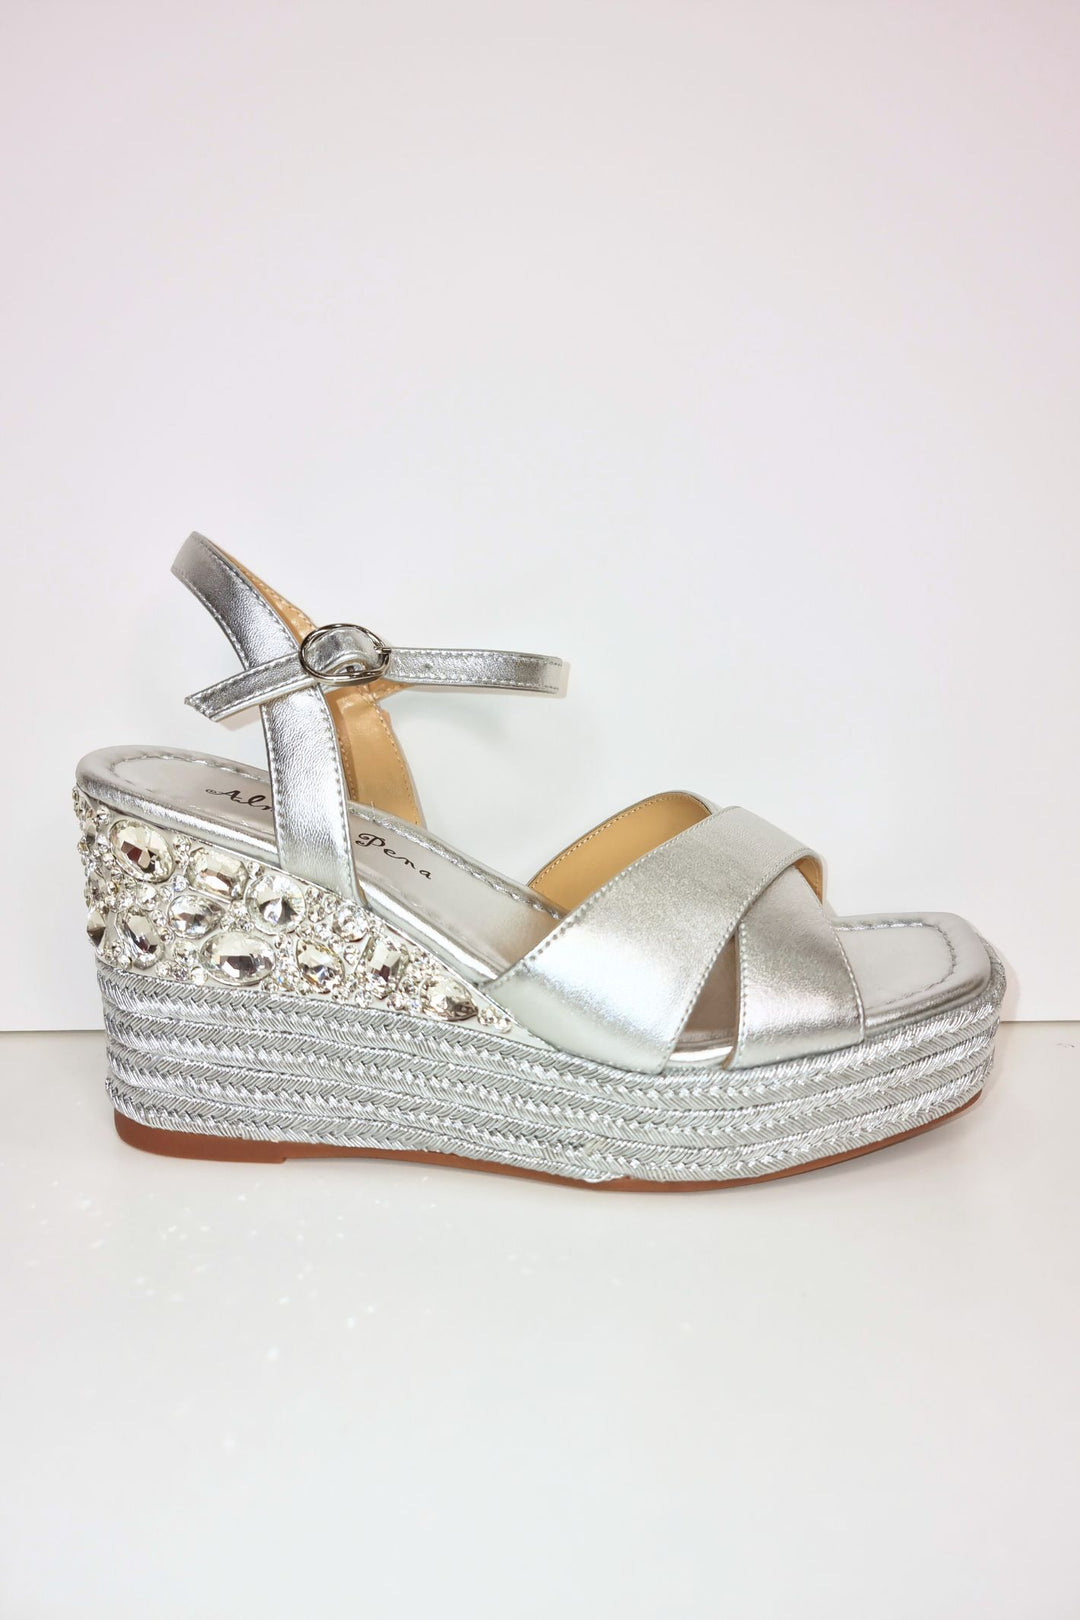 Alma En Pena V23495 Diva Silver Leather Sandals